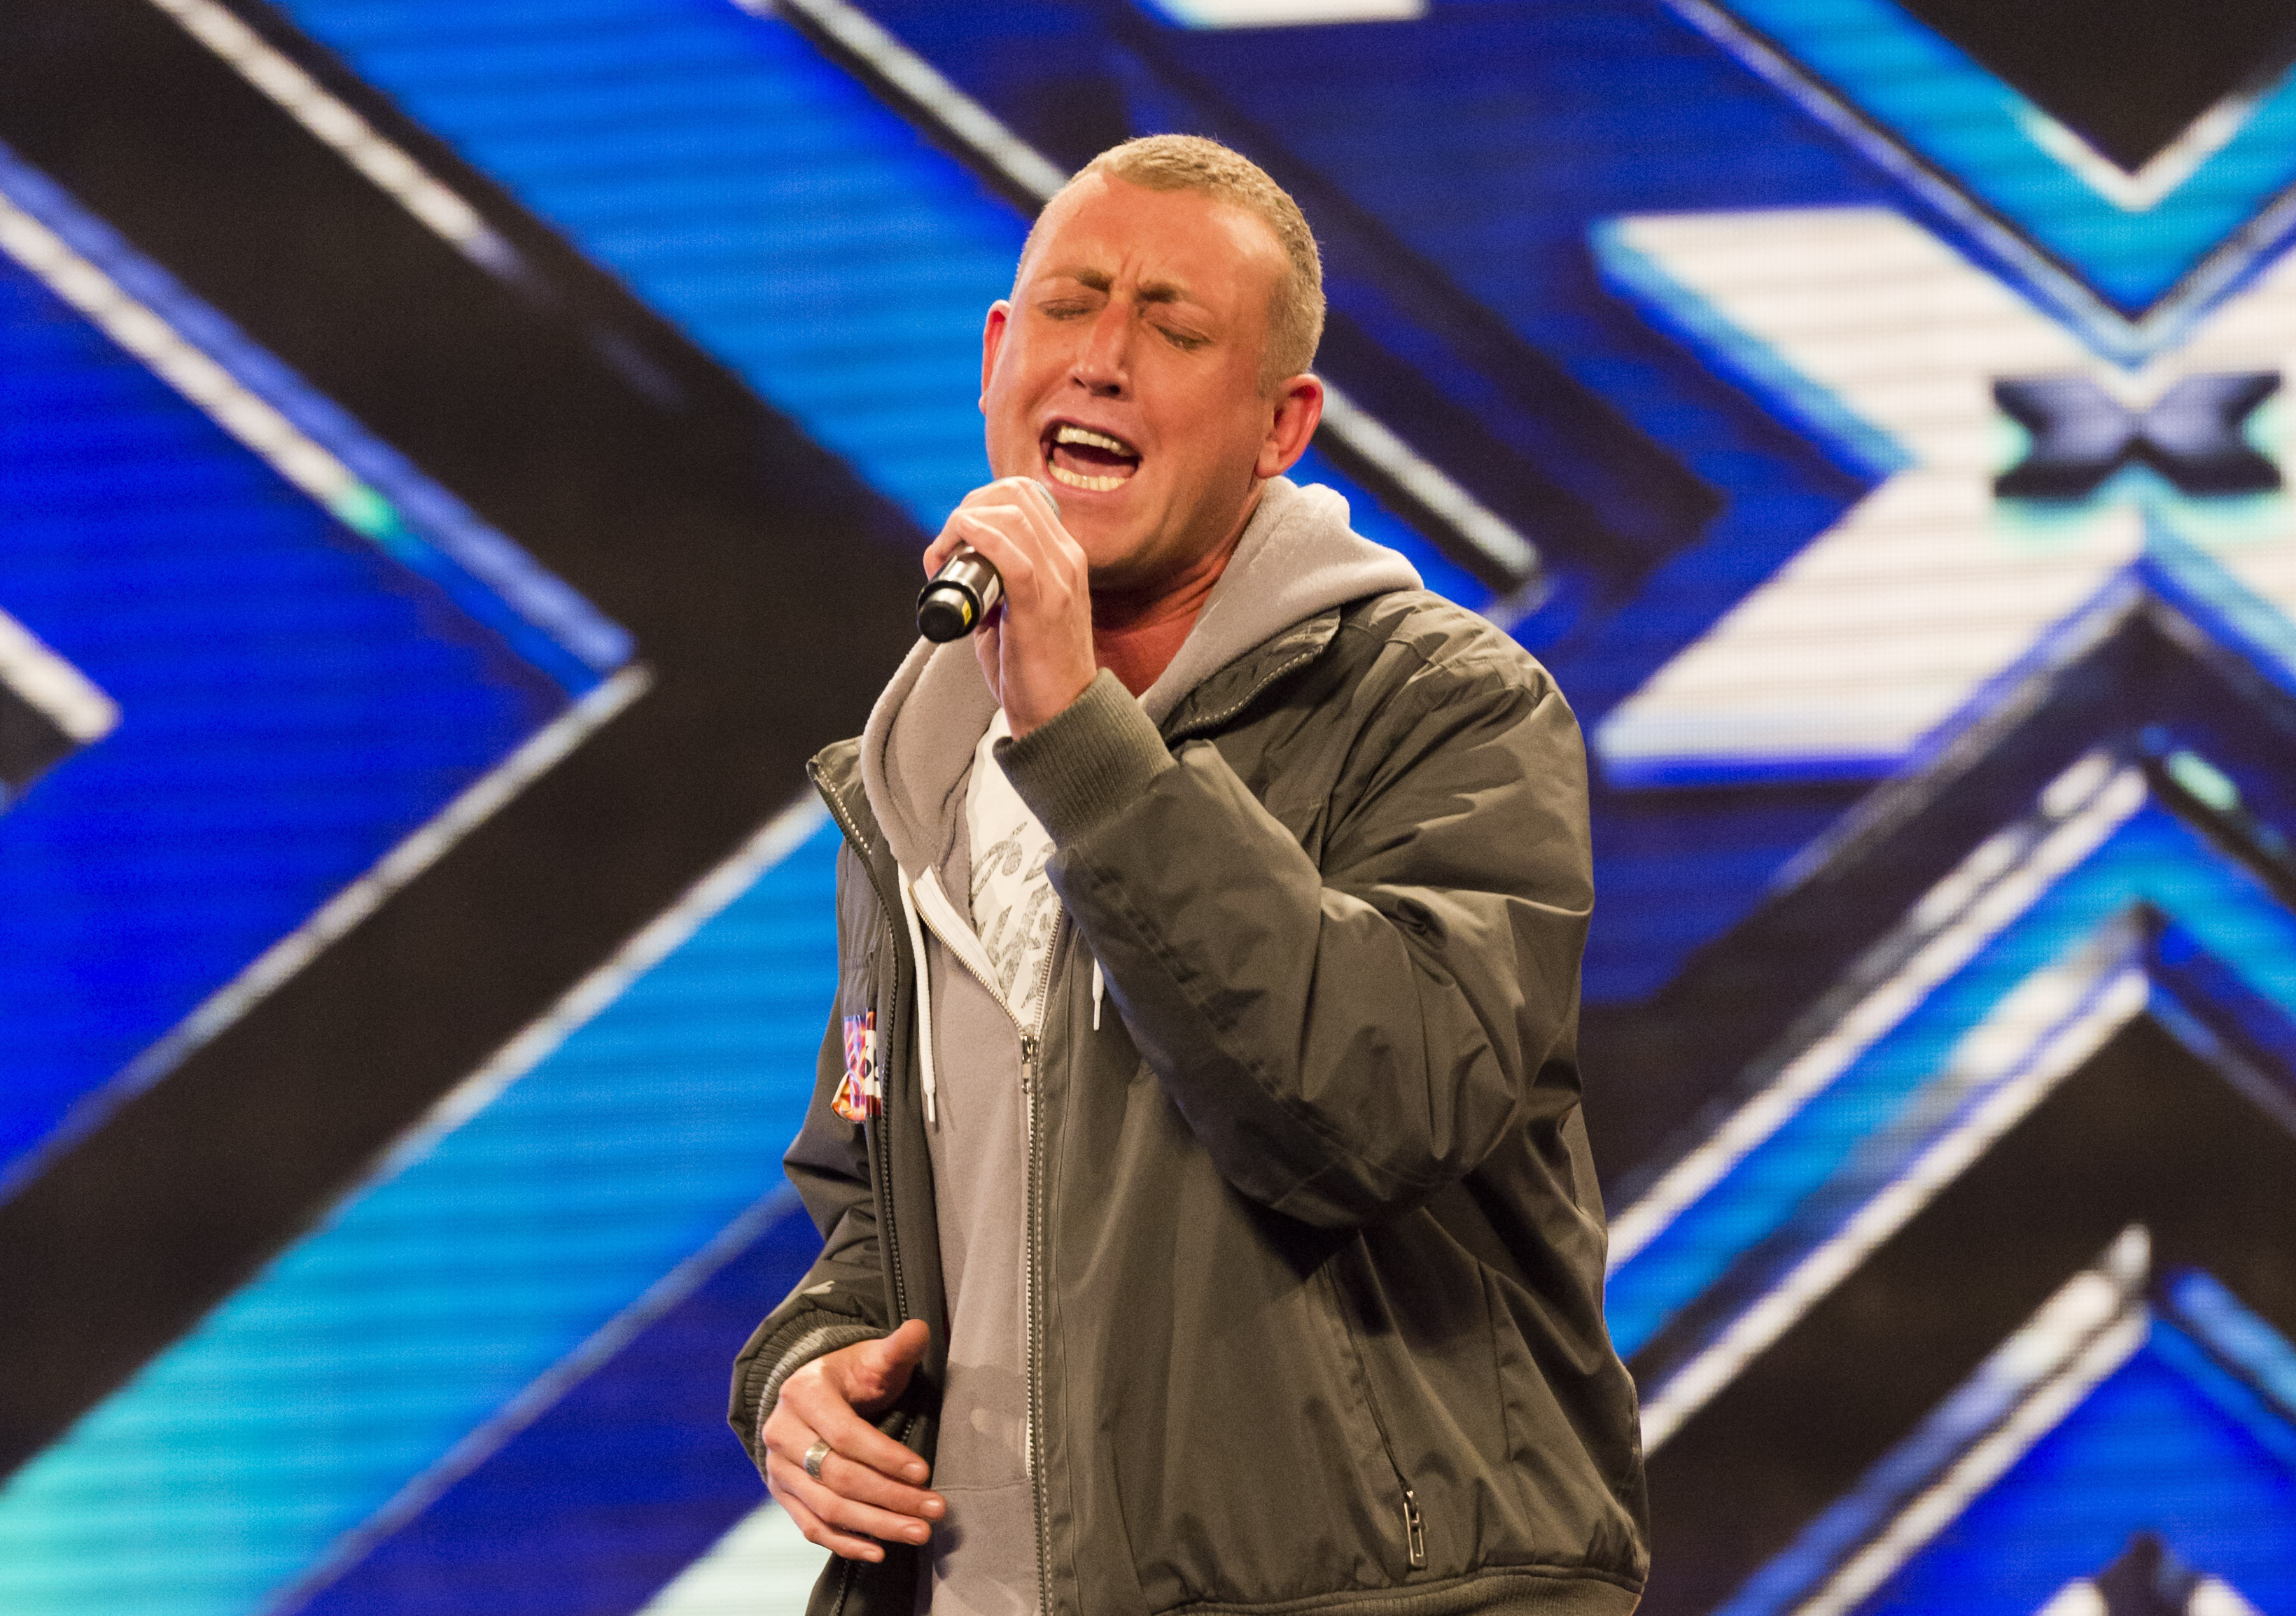 Der Sänger erlitt nach seinem Auftritt bei X Factor aufgrund von Trolling einen Nervenzusammenbruch